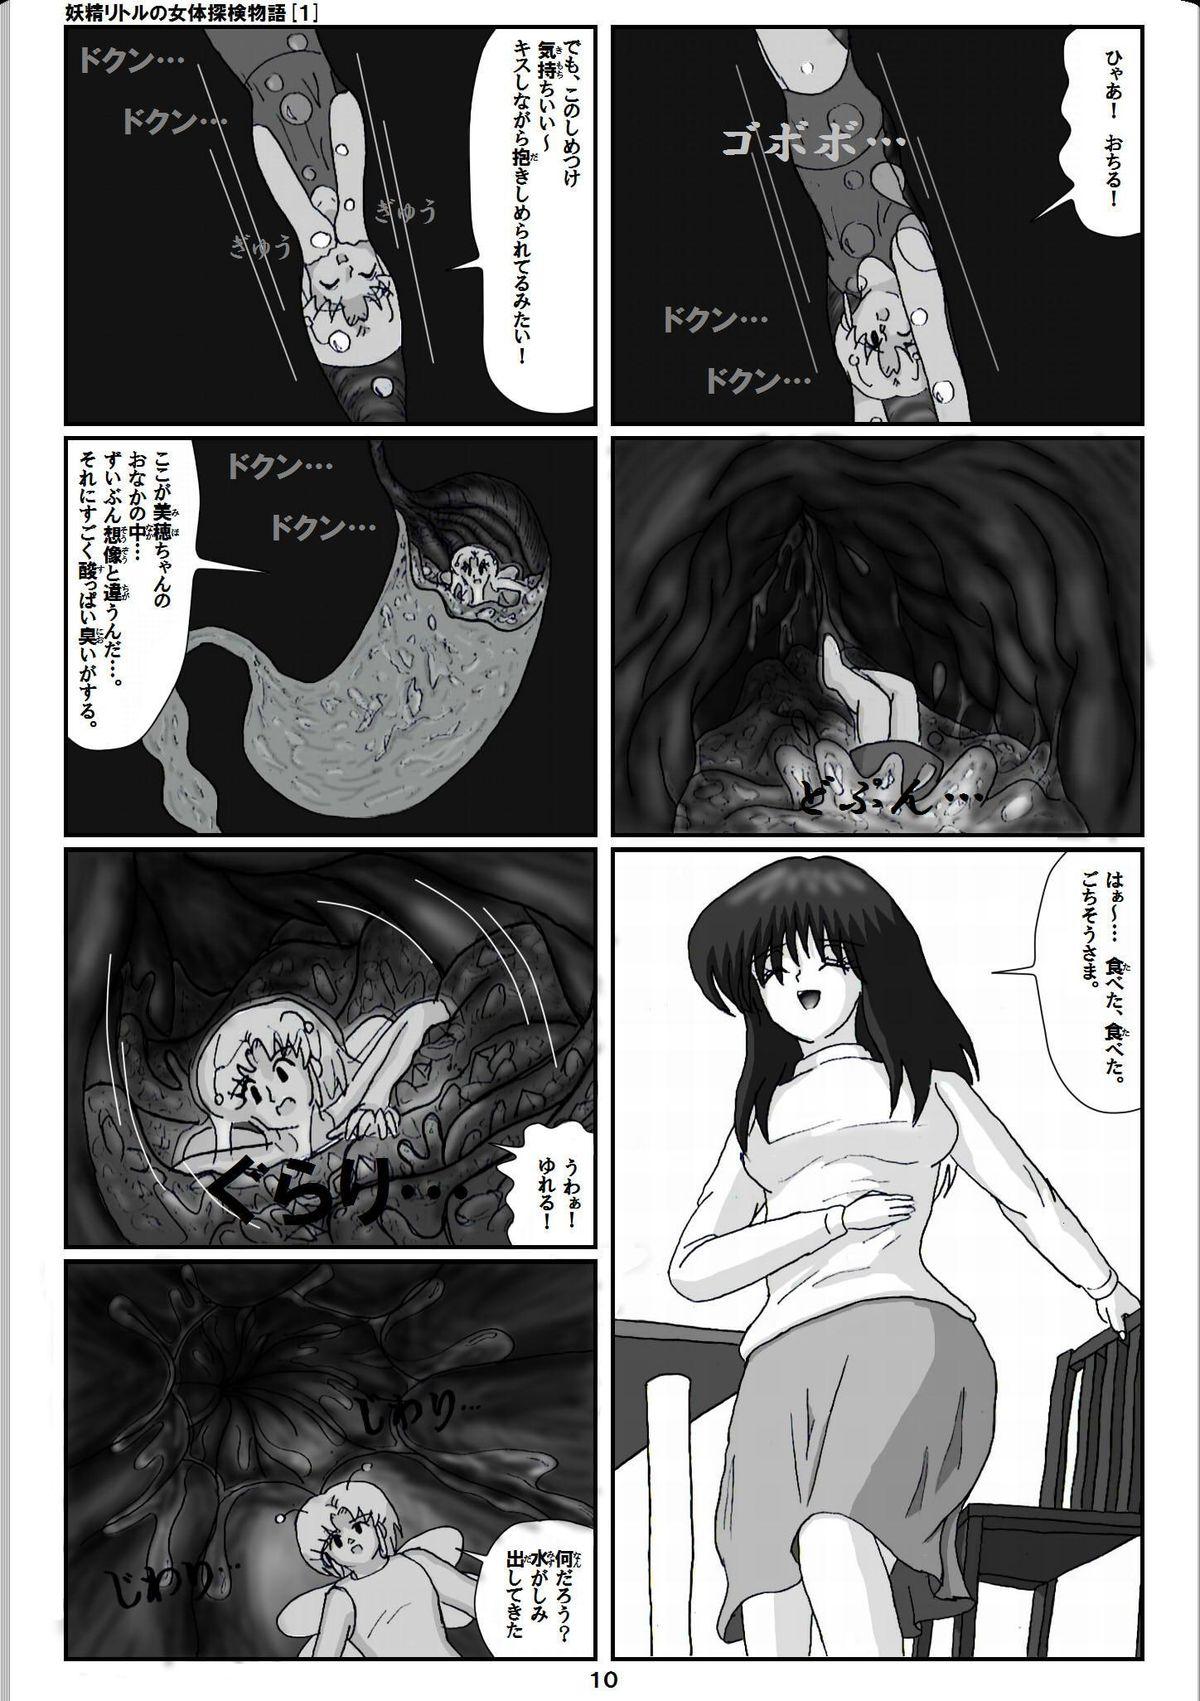 Petite Porn Yousei ritoru no nyoutai tanken monogatari Omegle - Page 10